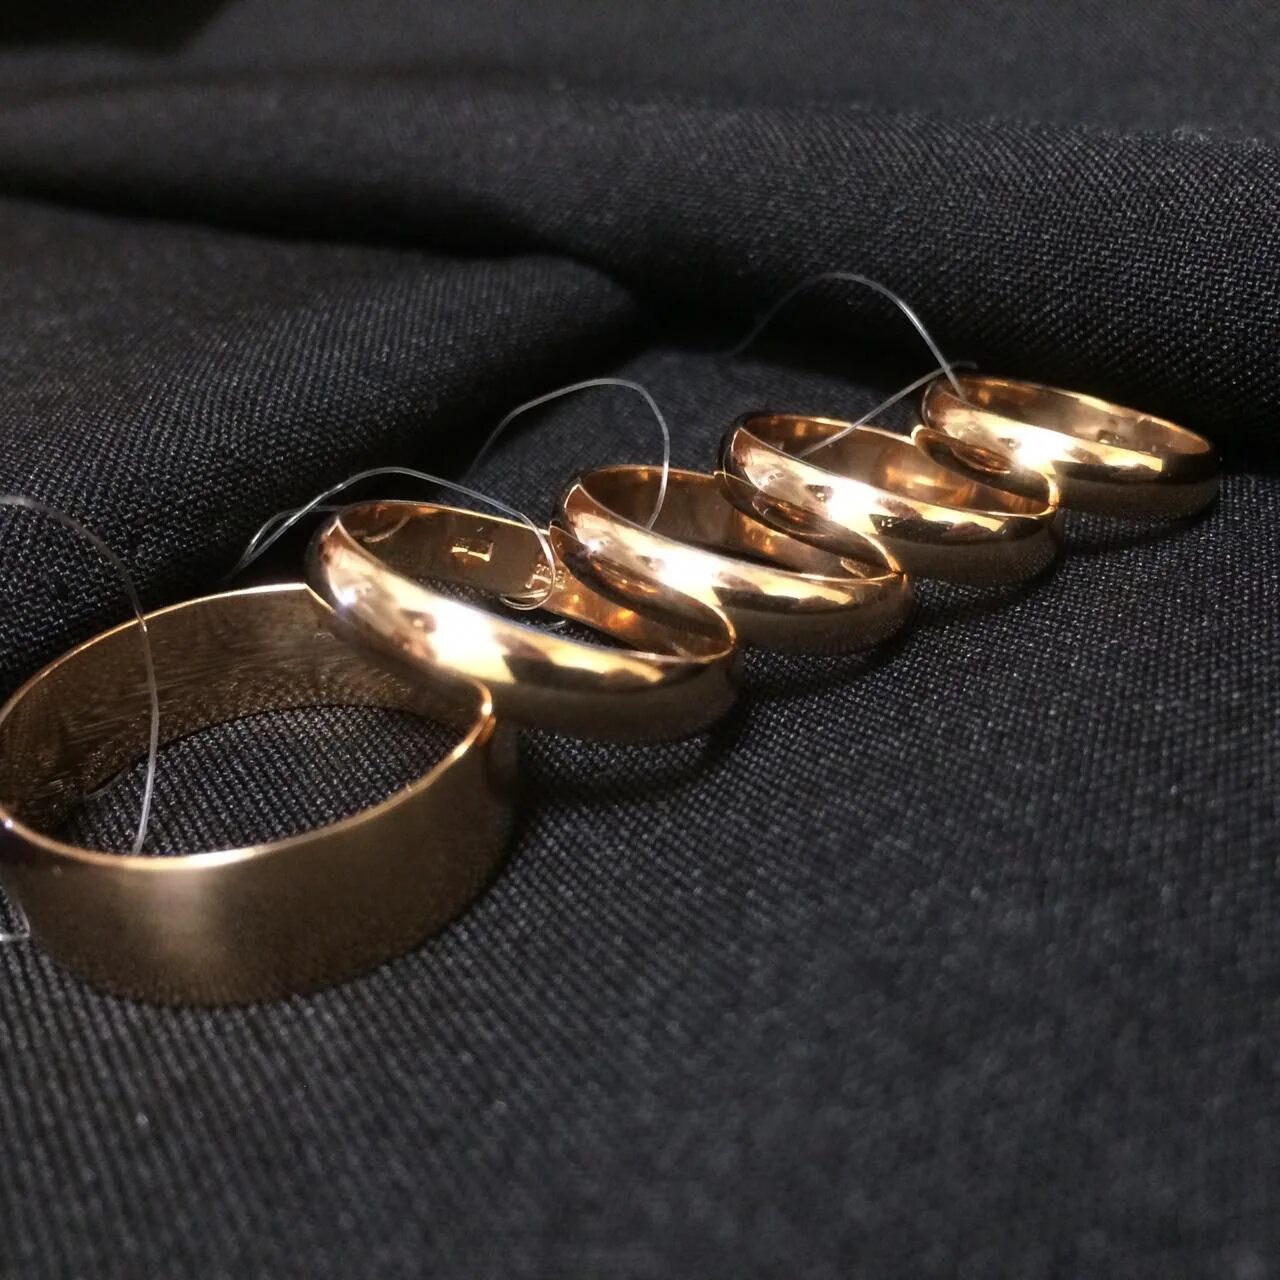 Обручальные кольца в ломбарде. Кольцо 7 грамм золота. Обручальное кольцо 5 грамм. Дубайское золото кольца обручальные. Золота ломбард кольцо